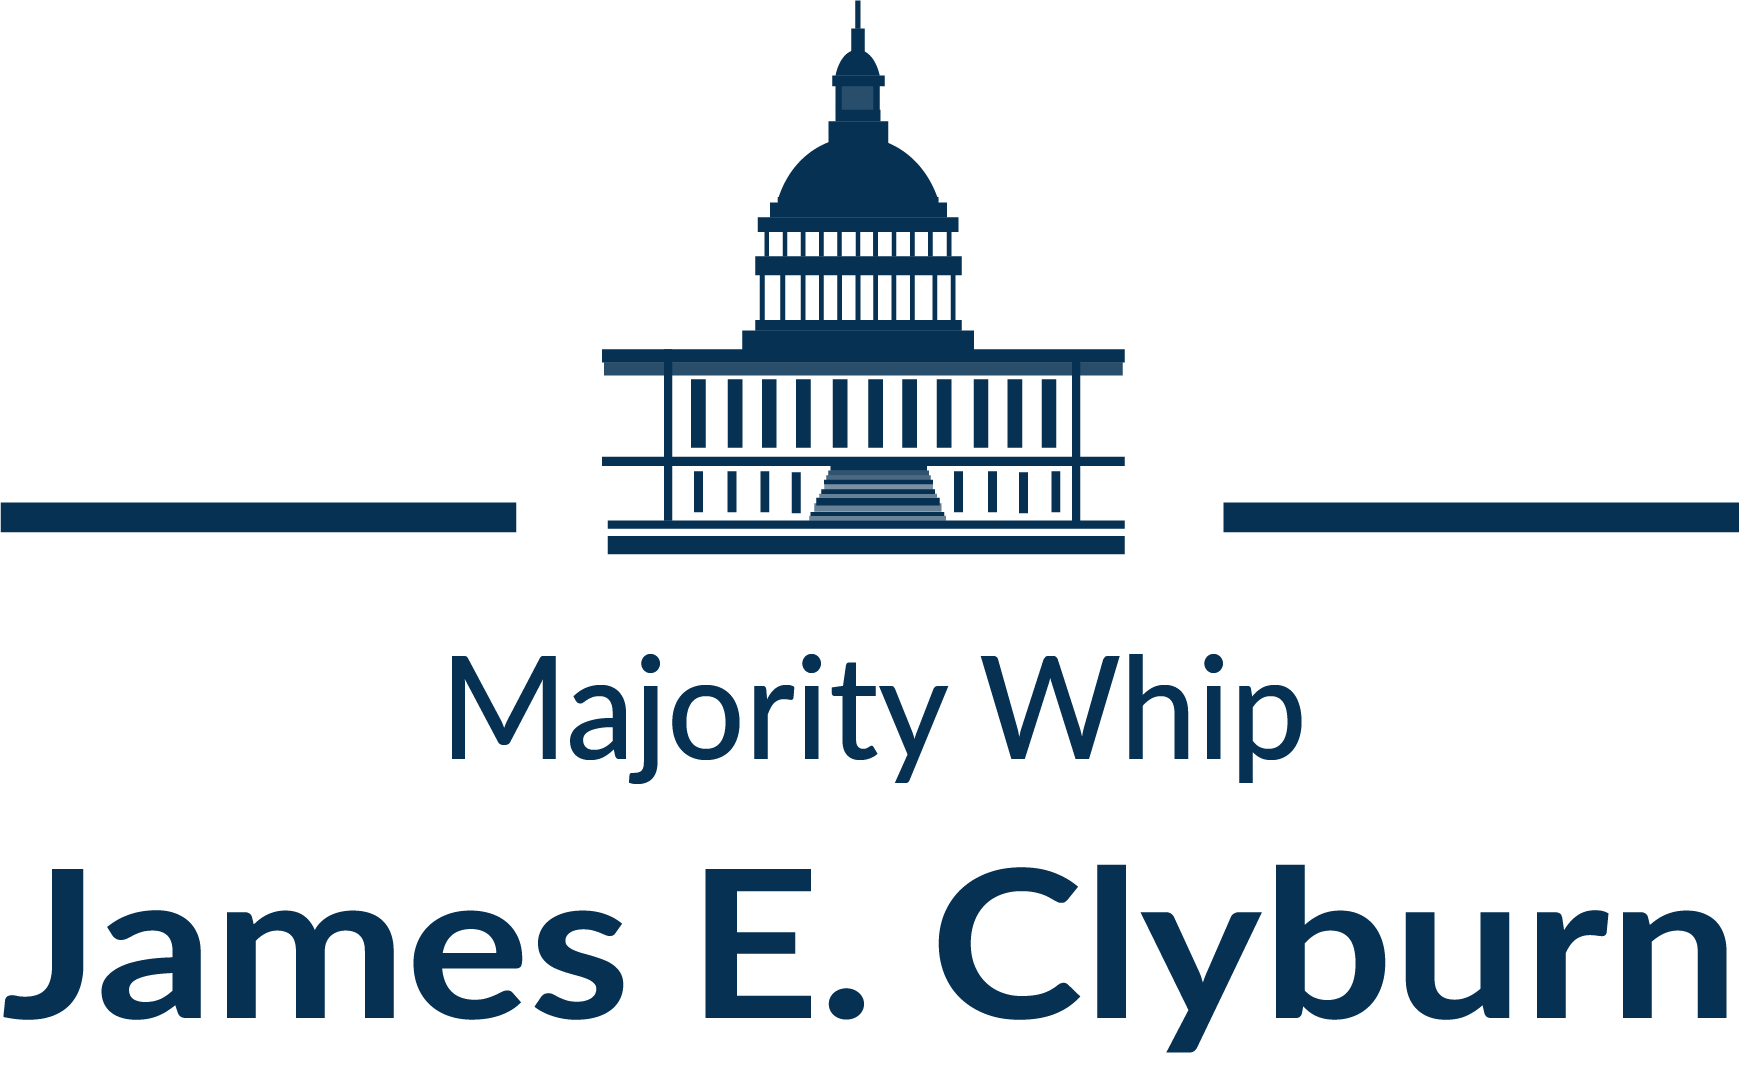 Majority Whip James Clyburn